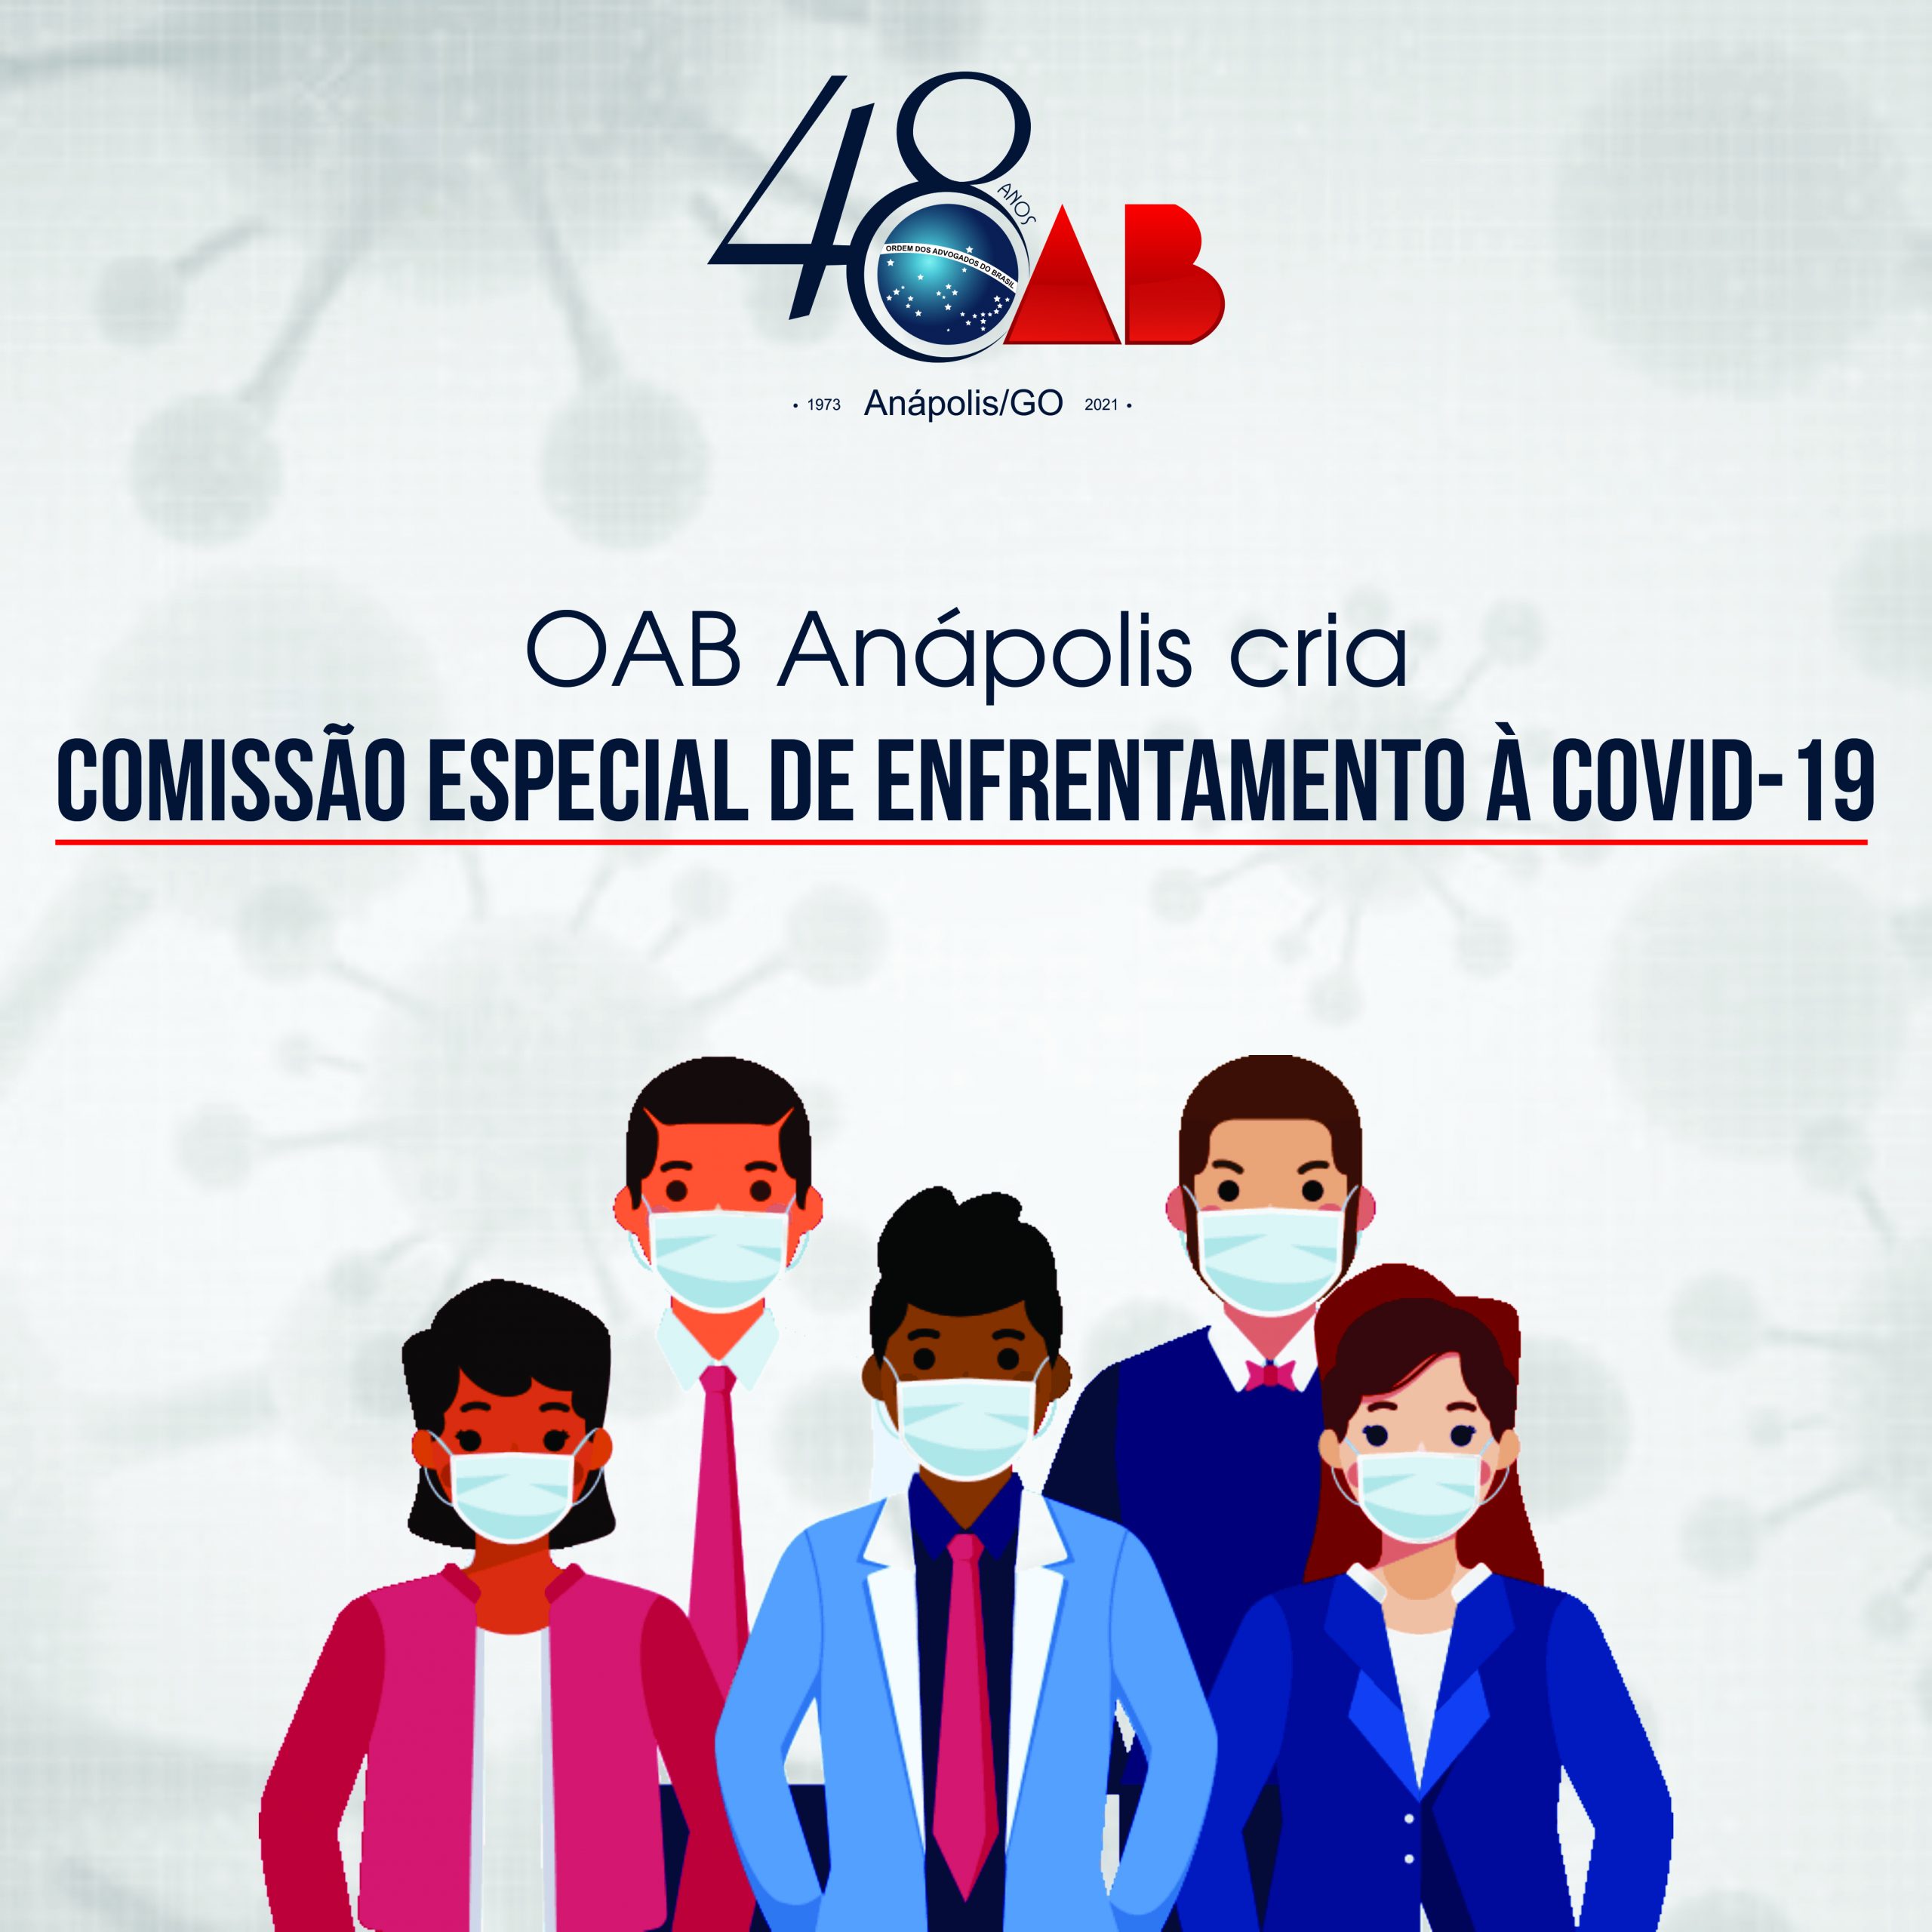 OAB Anápolis cria a Comissão Especial de Enfrentamento à Covid-19